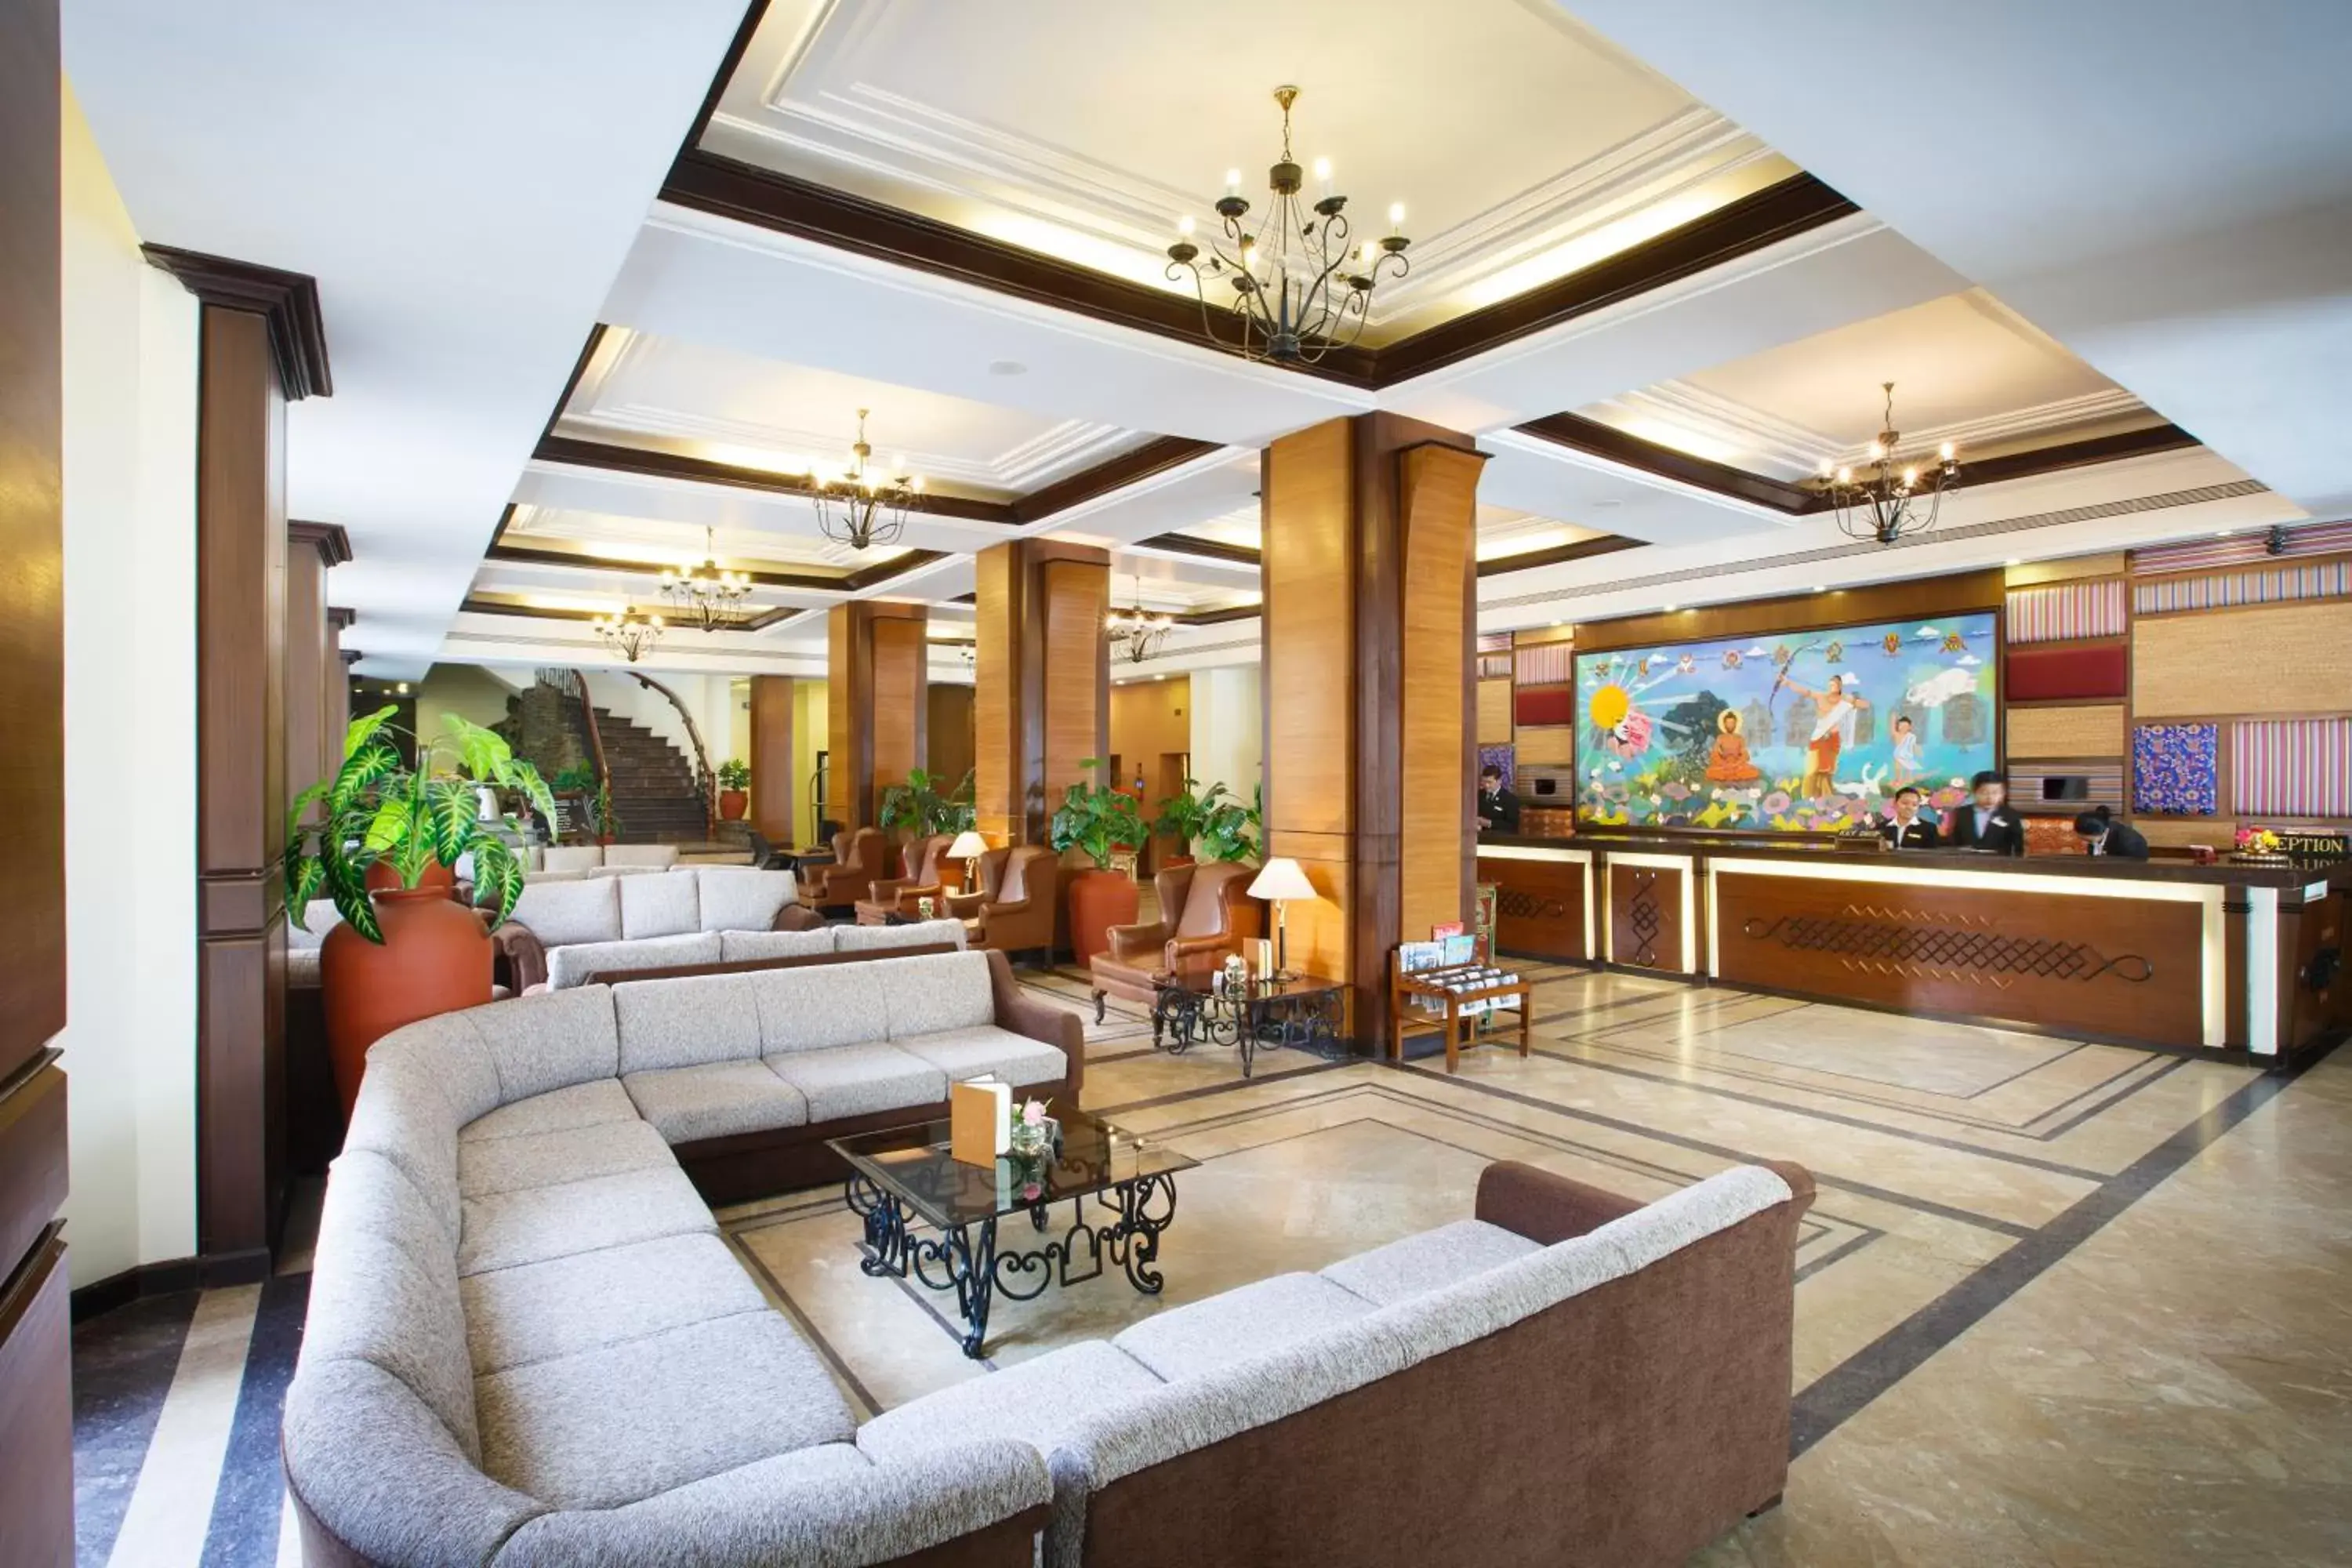 Lobby or reception, Lobby/Reception in Royal Singi Hotel